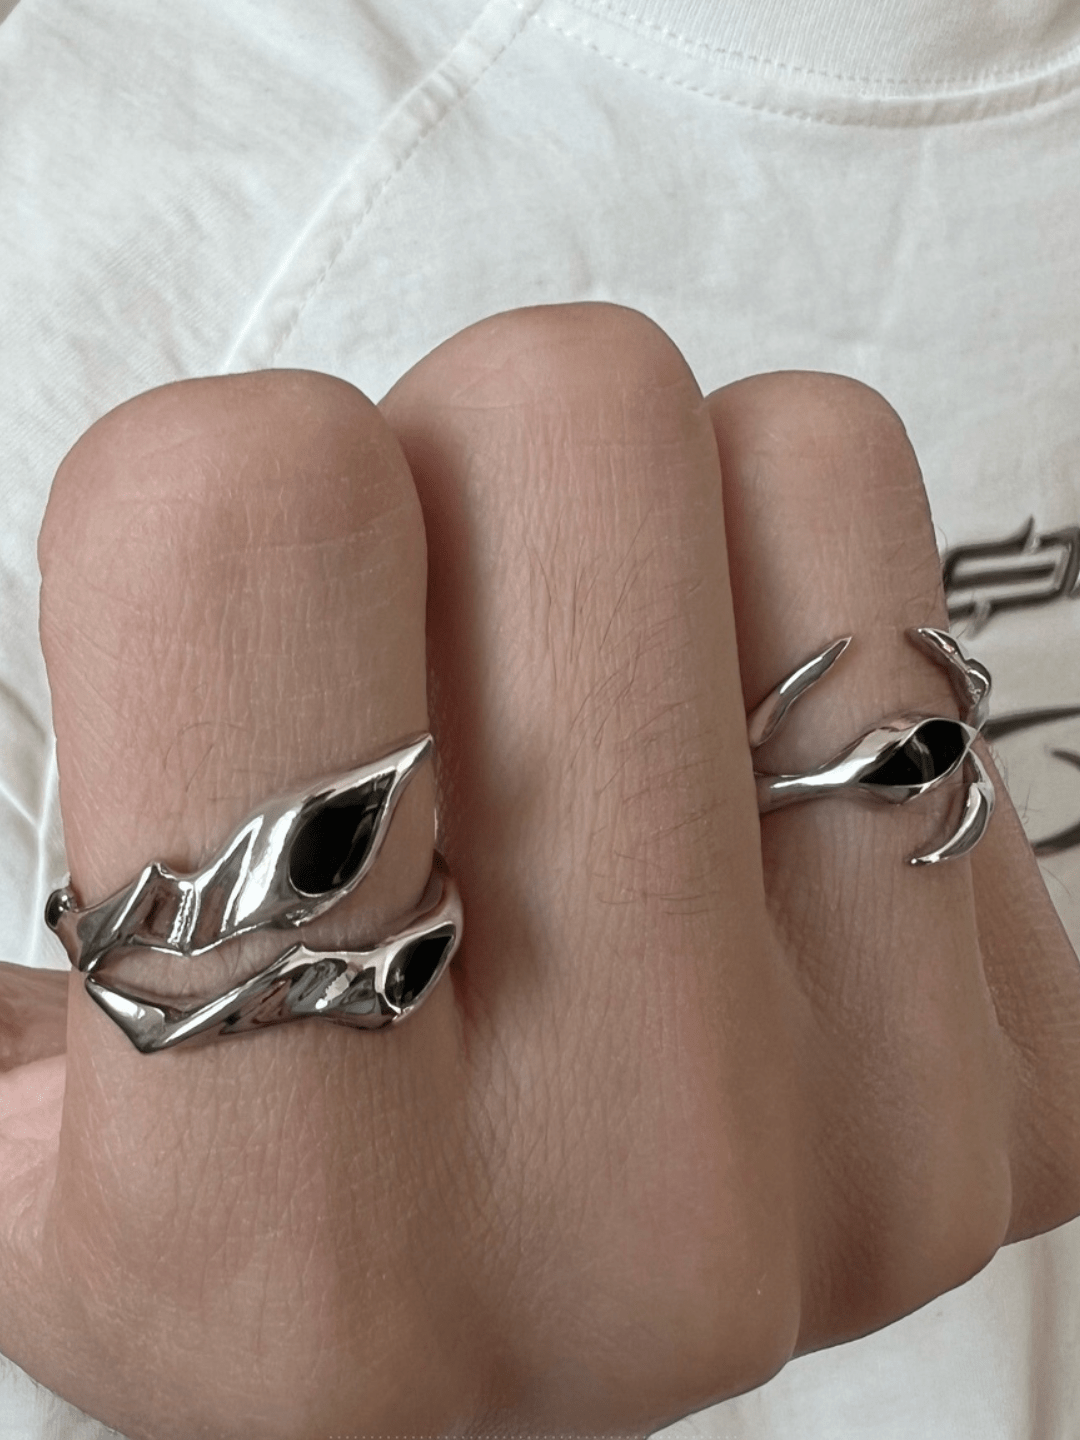 [CHEALIMPID] Irregular Alien Black Gemstone Metal Ring set na927